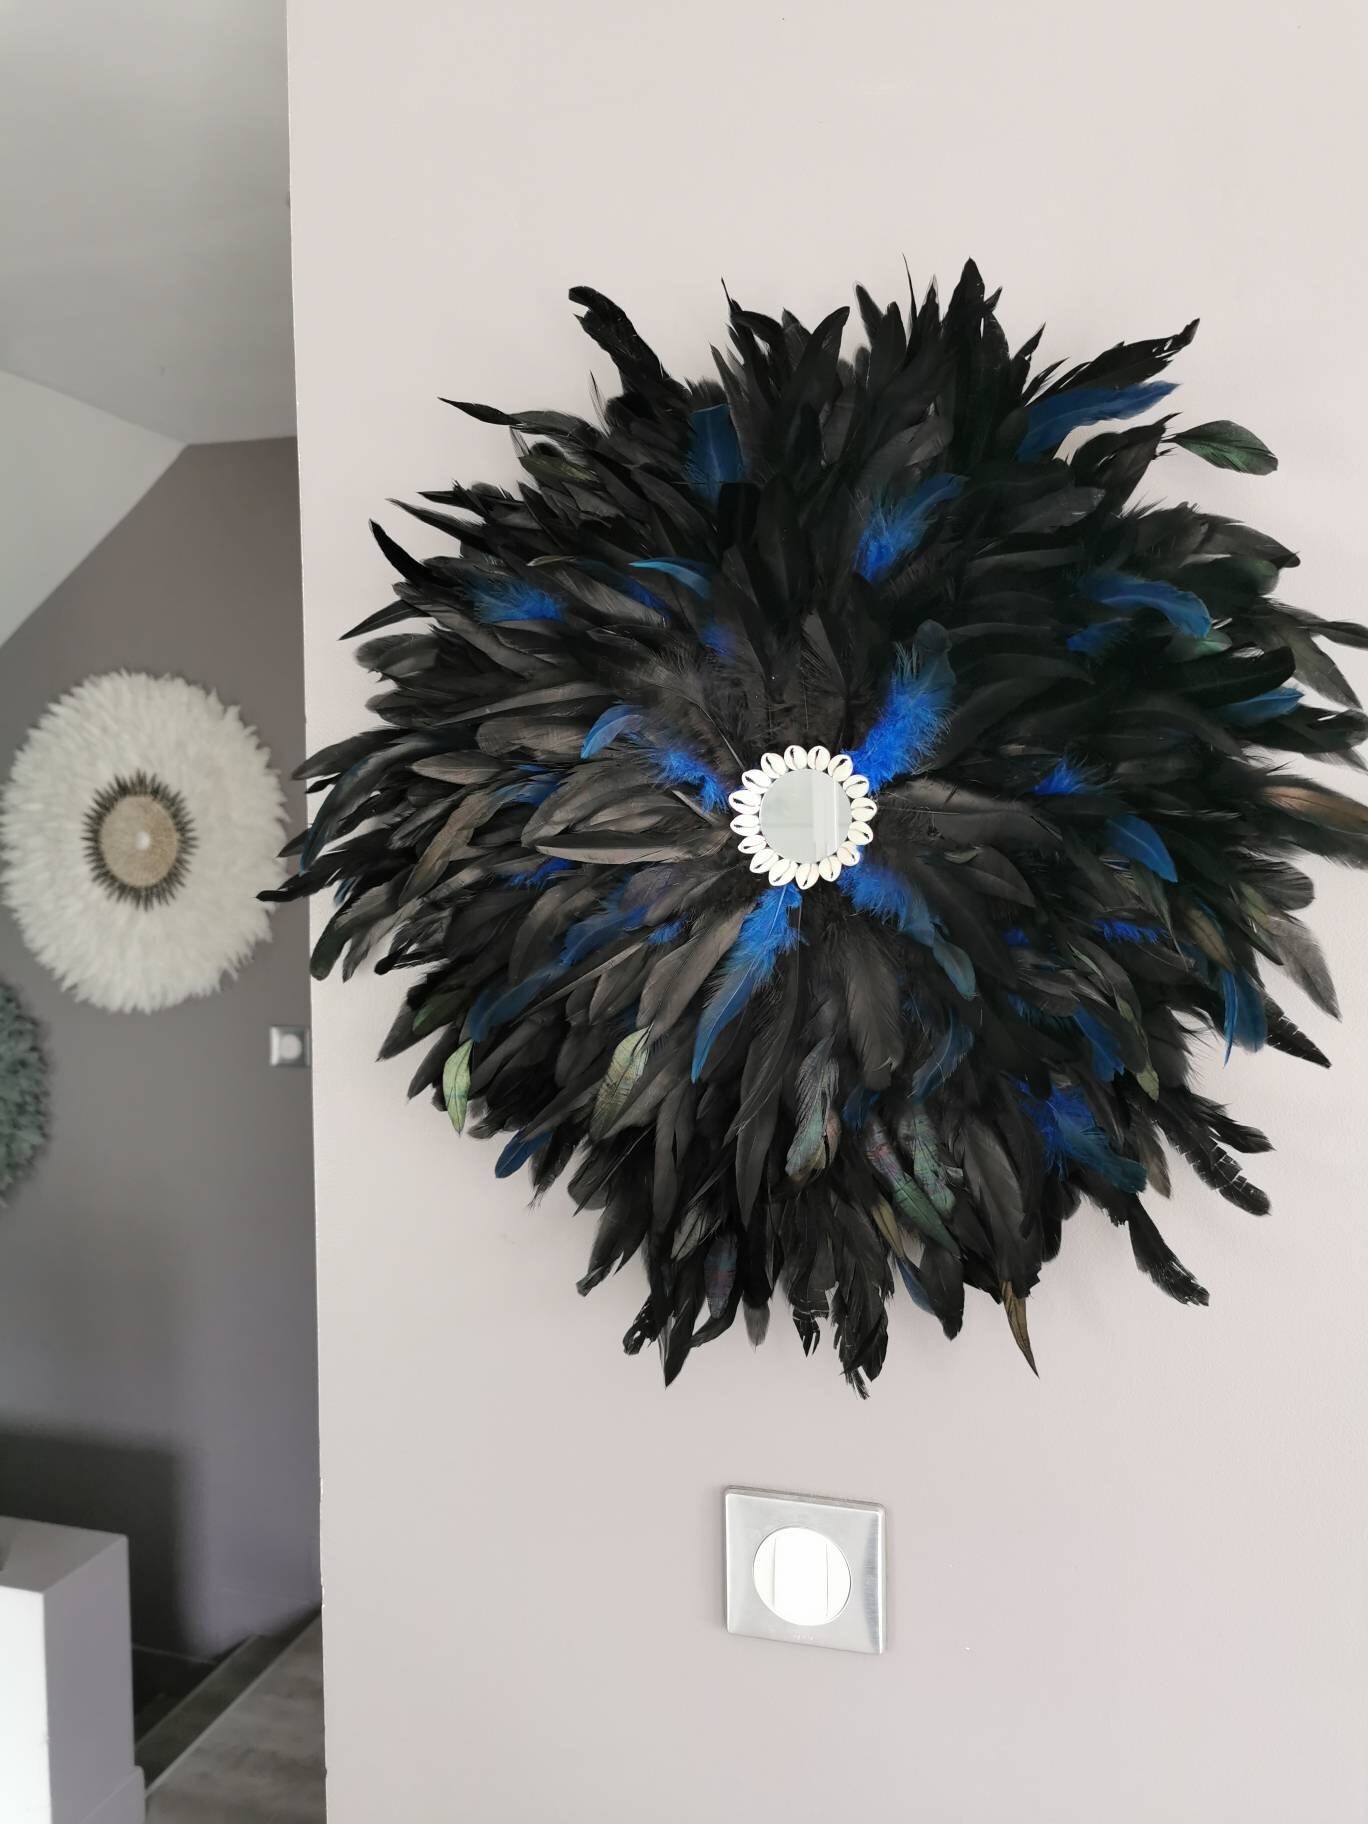 Jujuhat/Juju Hat Handmade en Plumes Naturelles 55 cm de Diamètre - Coloris Noir et Bleu Centre Miroi